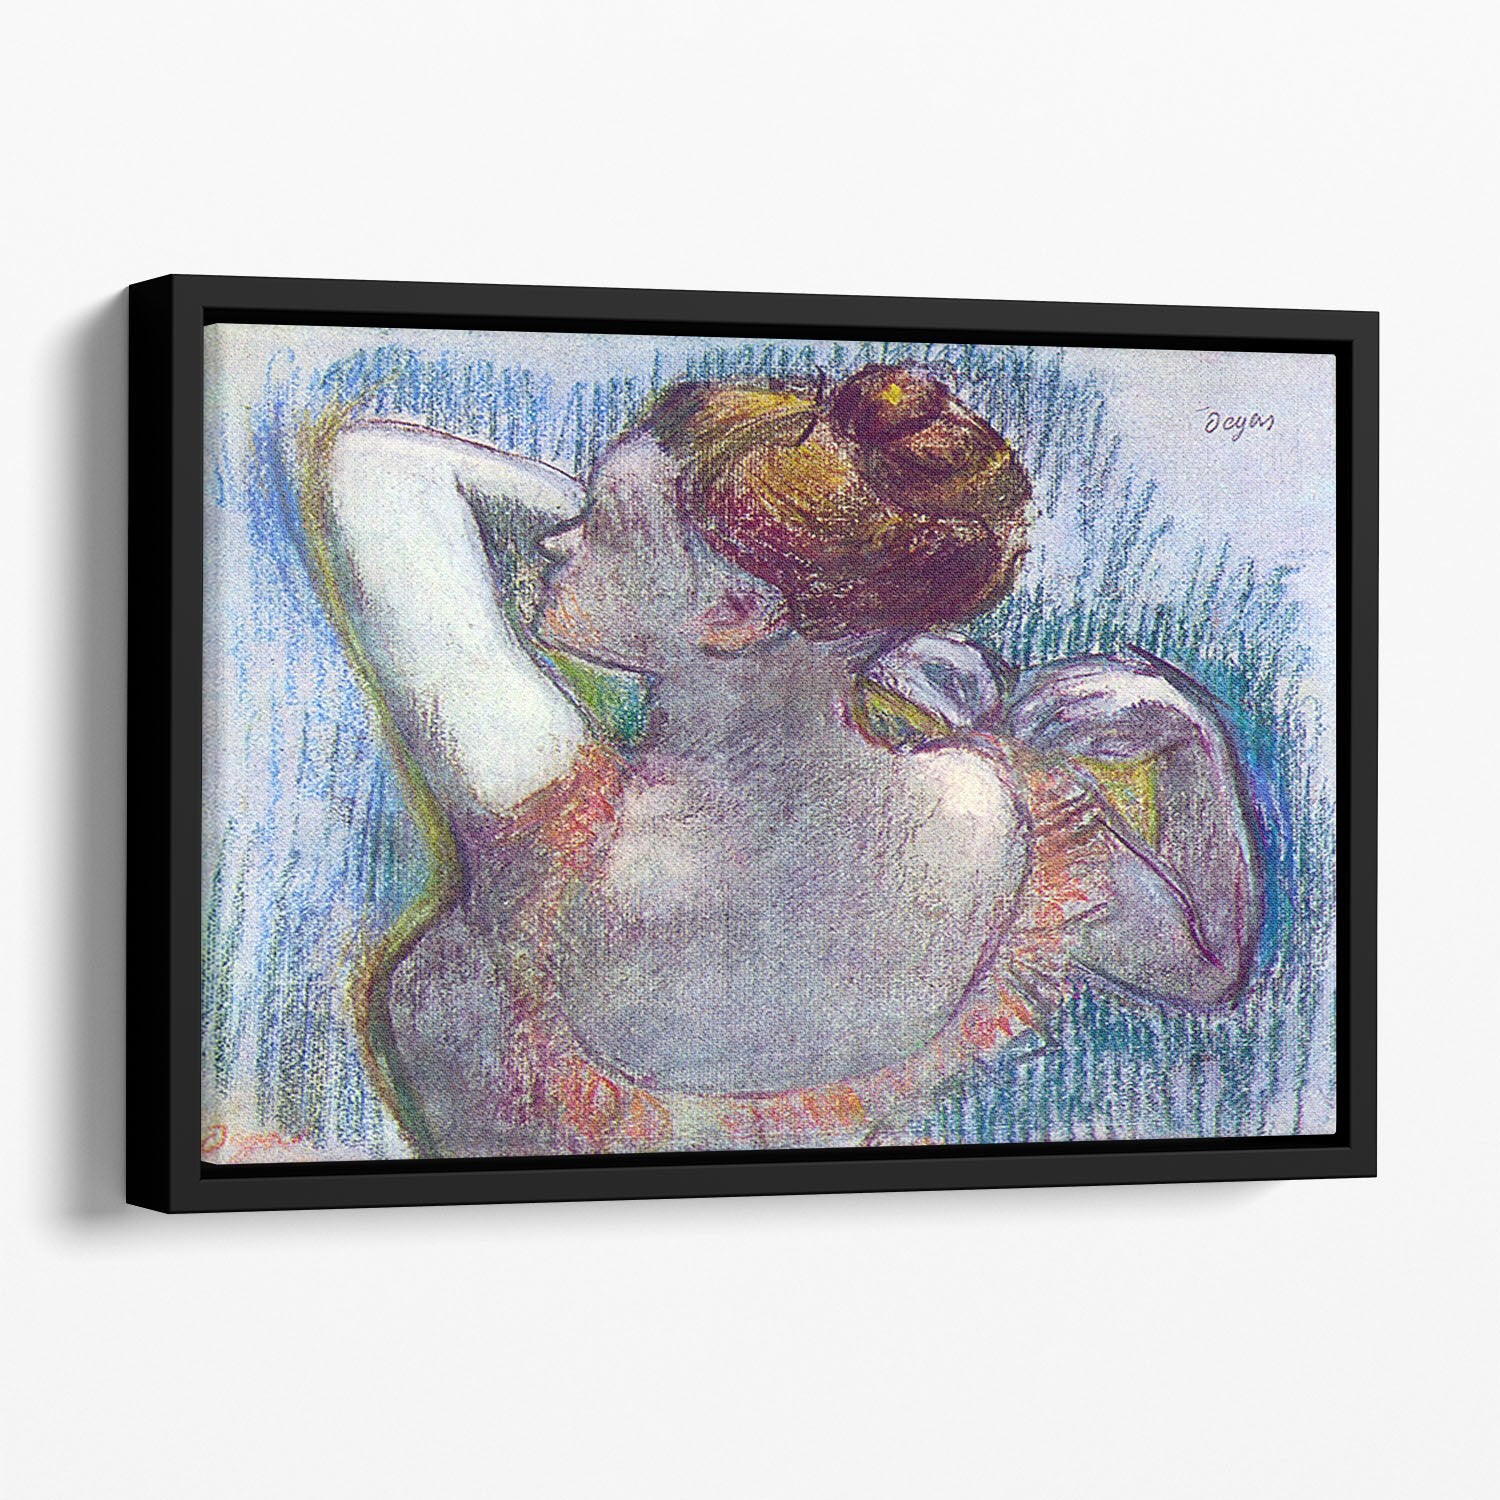 Dancer by Degas Floating Framed Canvas